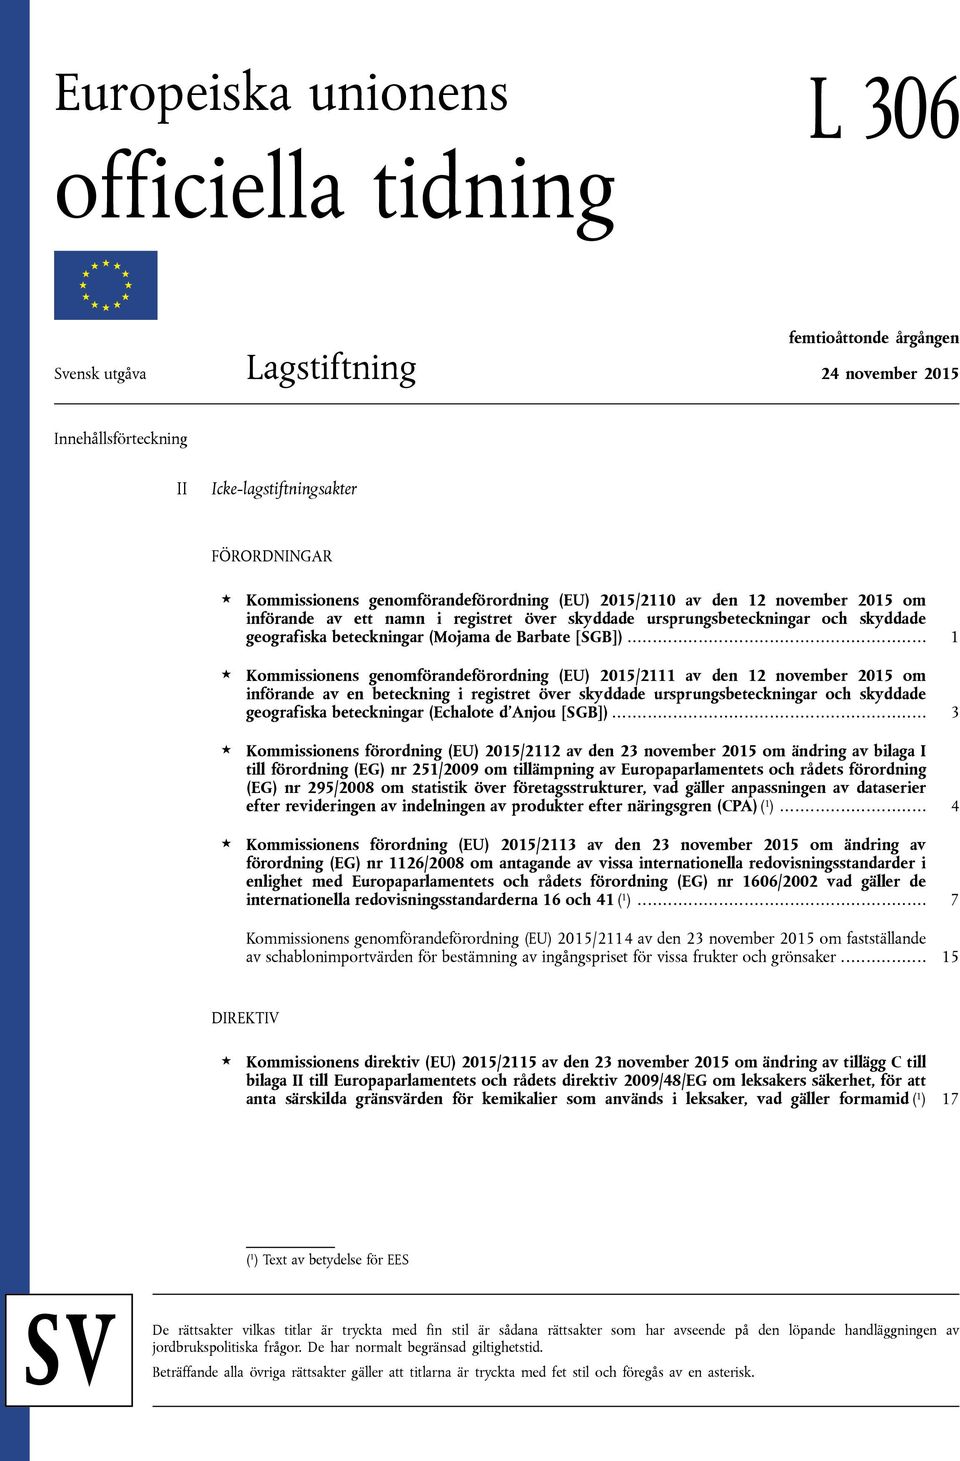 .. 1 Kommissionens genomförandeförordning (EU) 2015/2111 av den 12 november 2015 om införande av en beteckning i registret över skyddade ursprungsbeteckningar och skyddade geografiska beteckningar